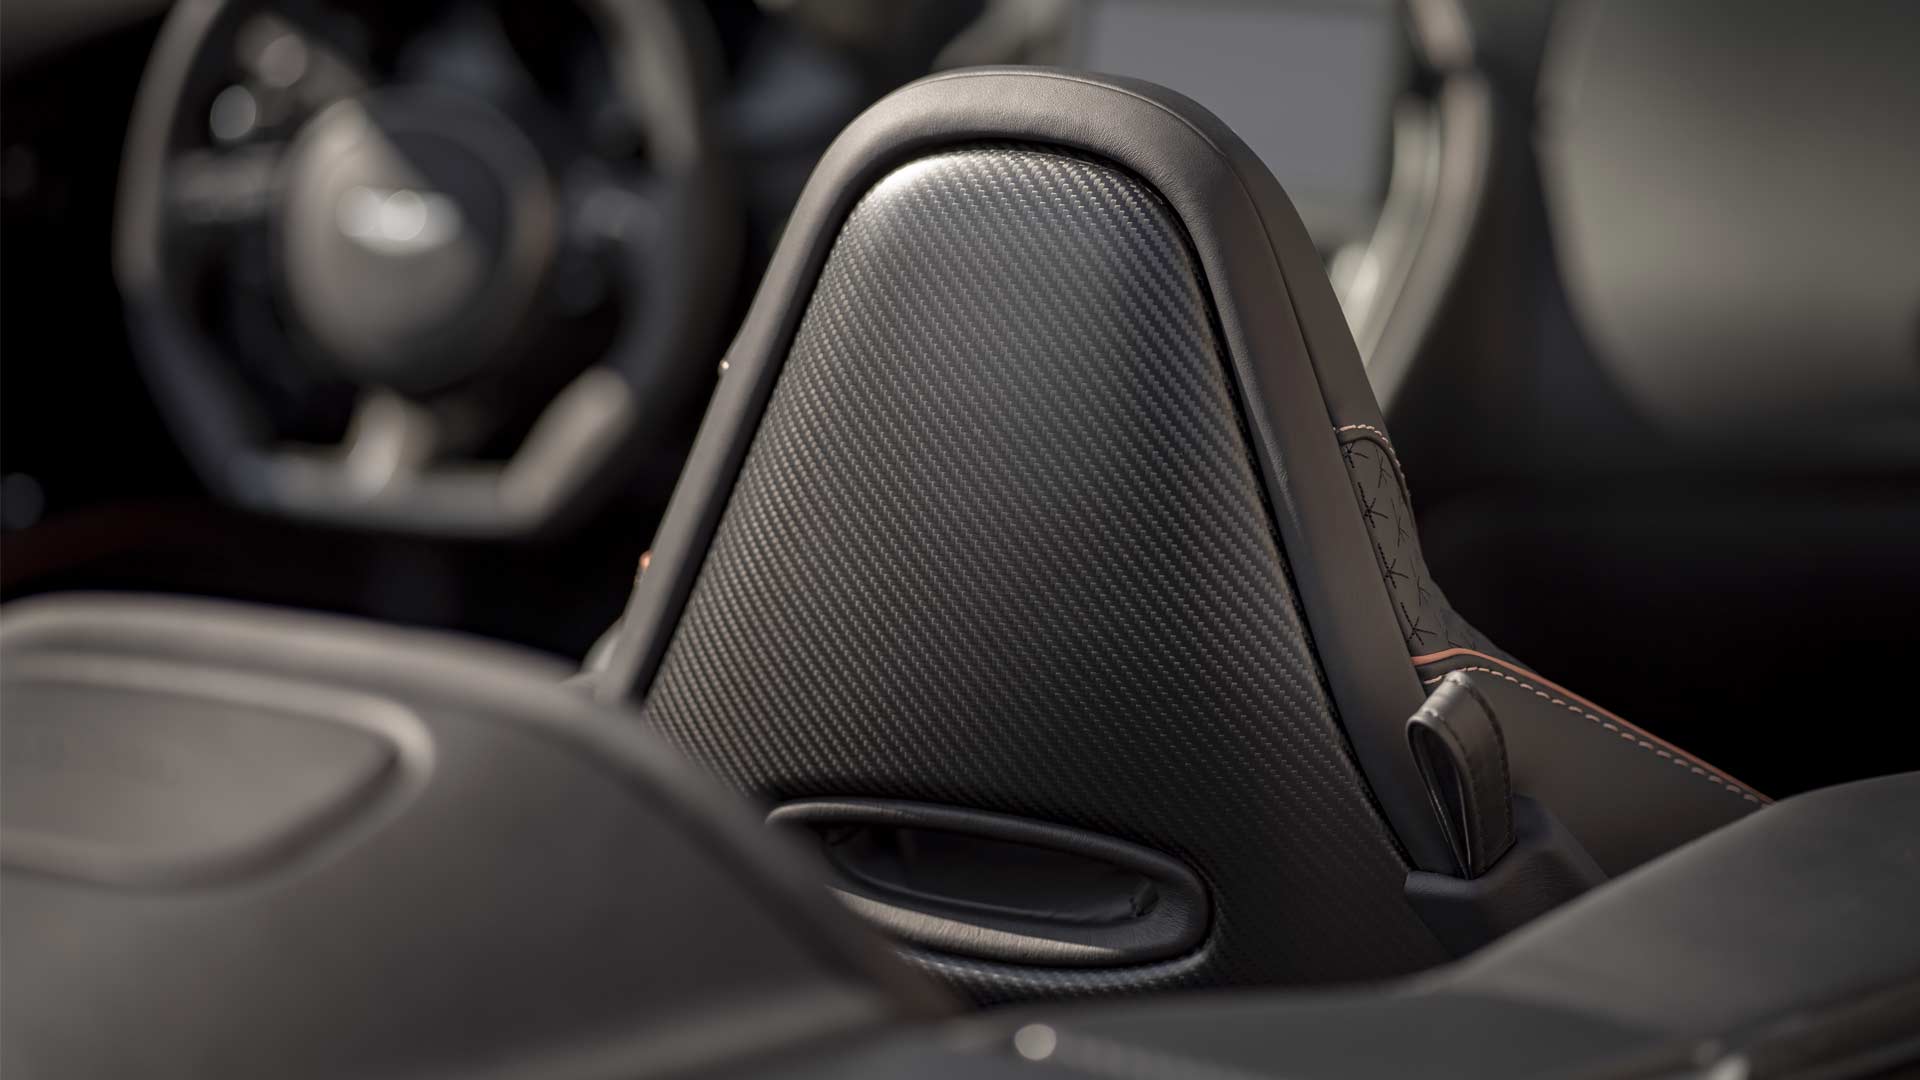 Aston-Martin-DBS-Superleggera-Volante-Carbon-Fibre-Seat-Back